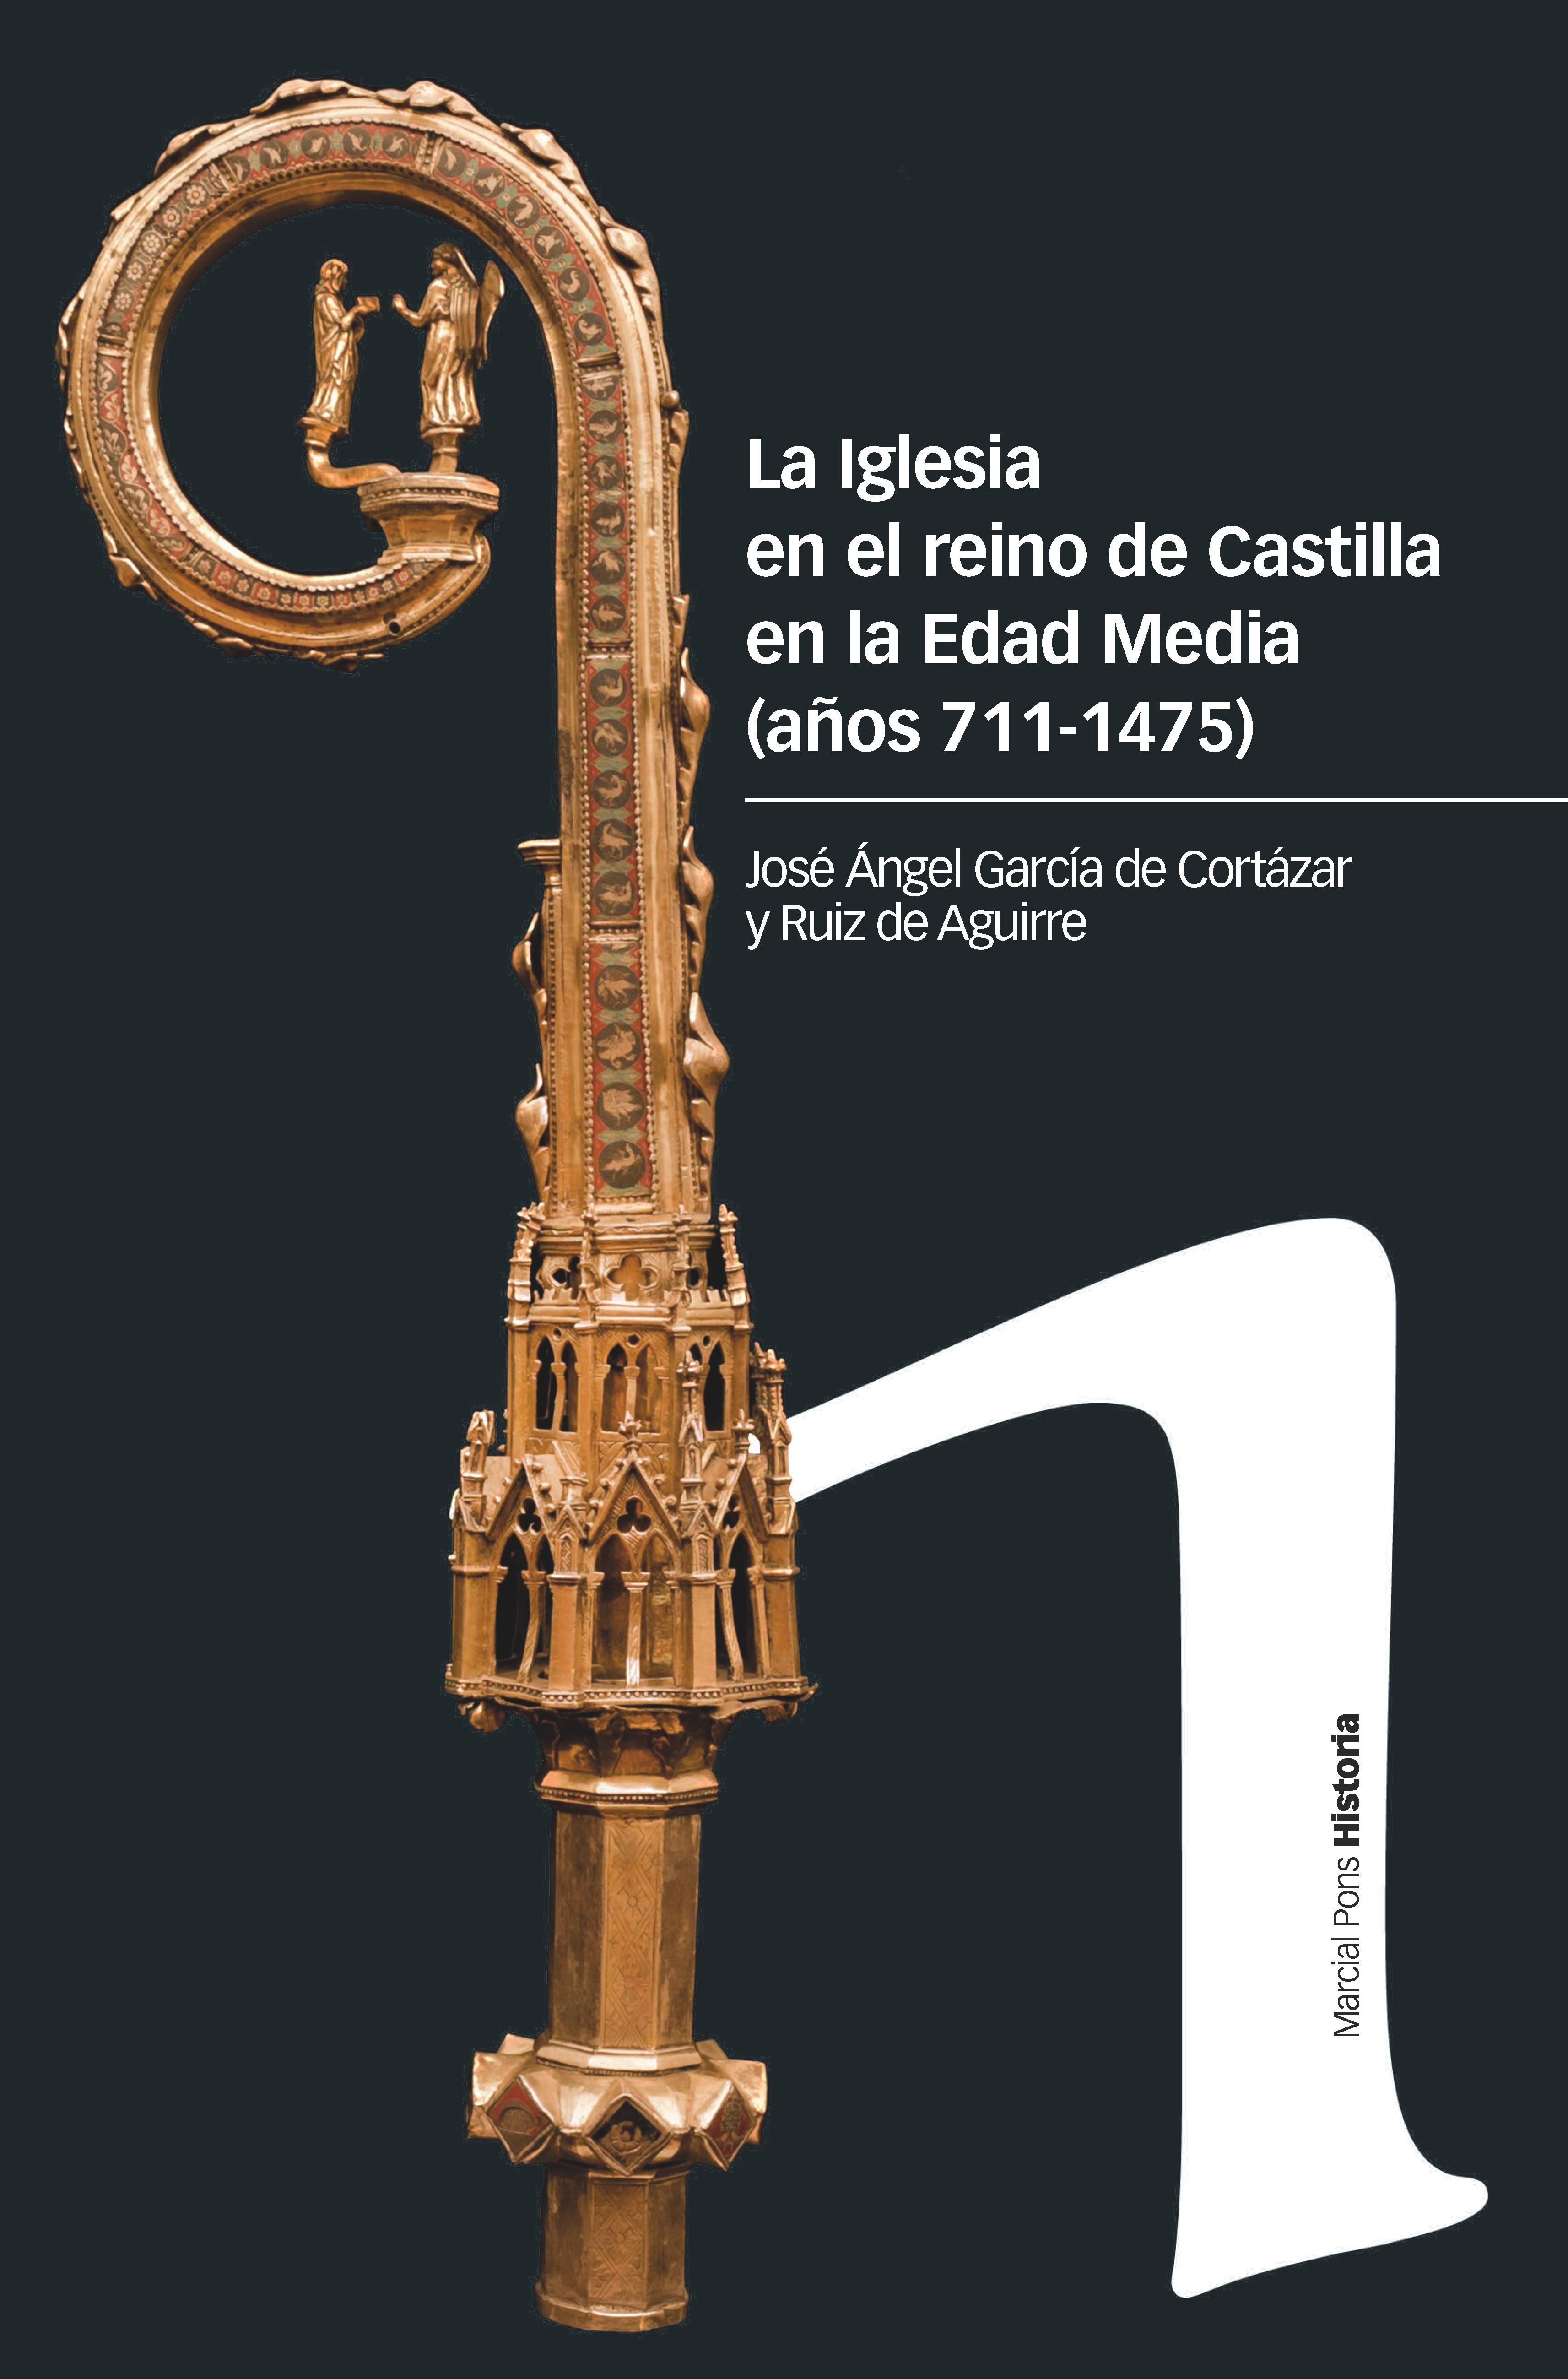 La Iglesia en el reino de Castilla en la Edad Media "(Años 711-1475)". 